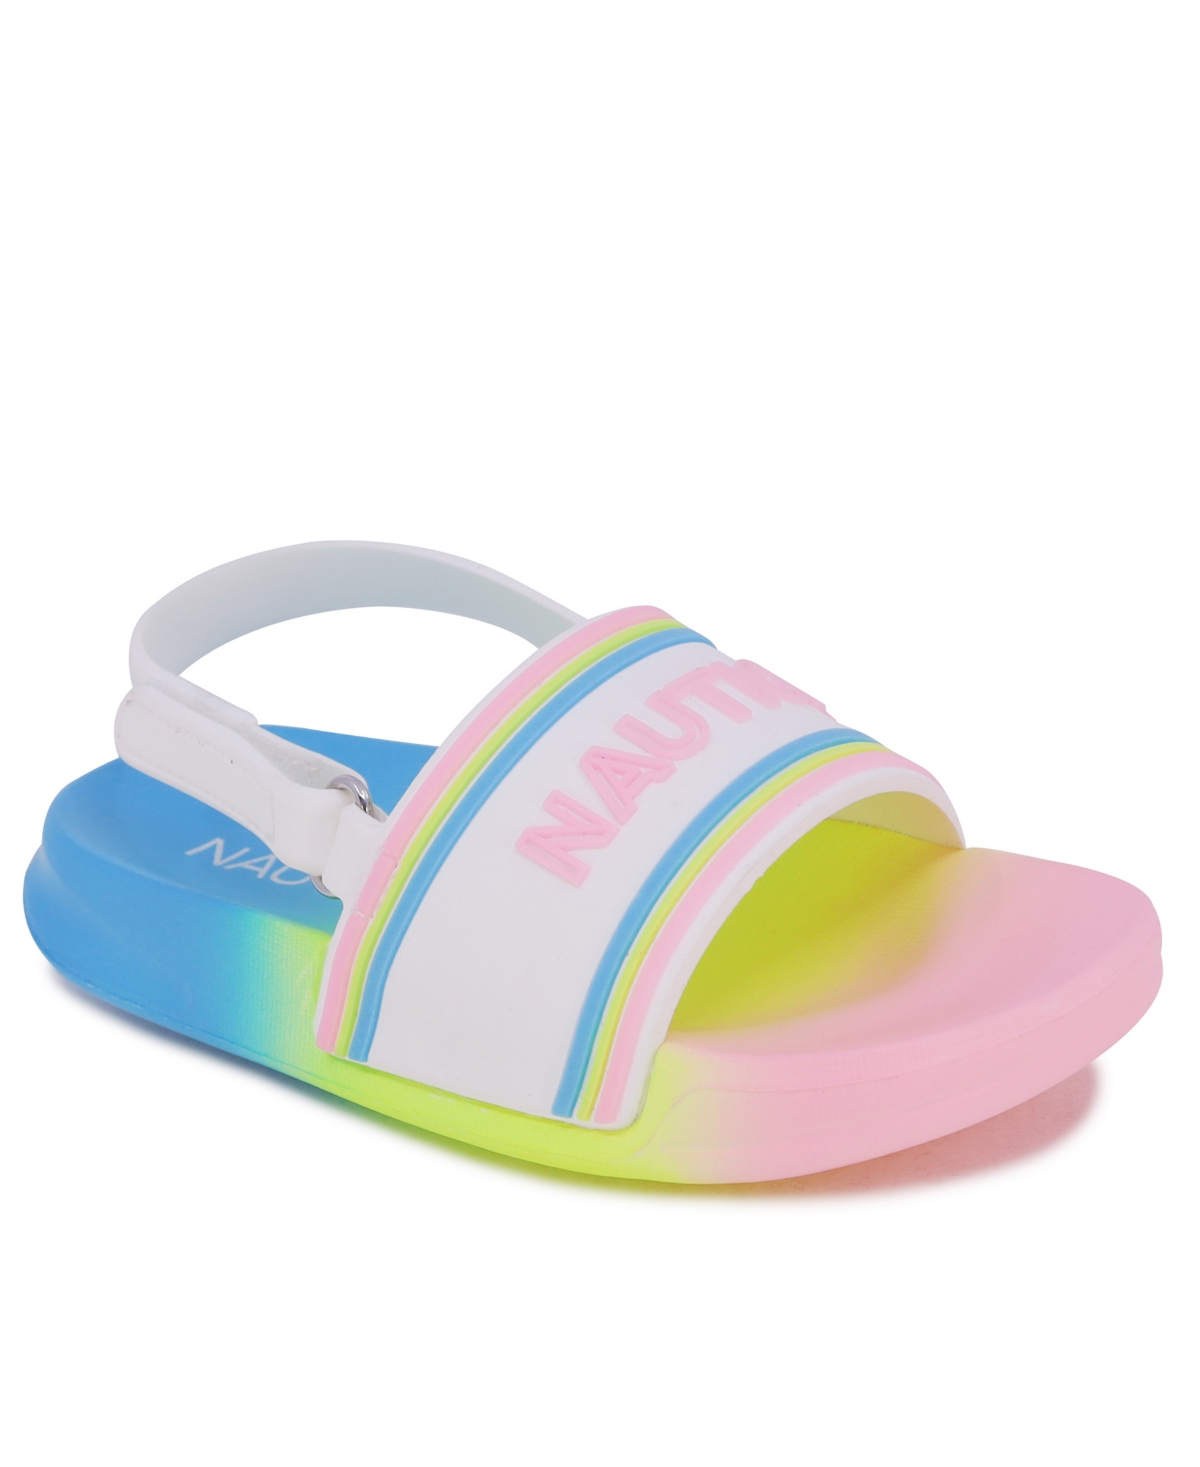 Nautica Toddler Girls Luz Slide Sandals In Bright Rainbow Gradient